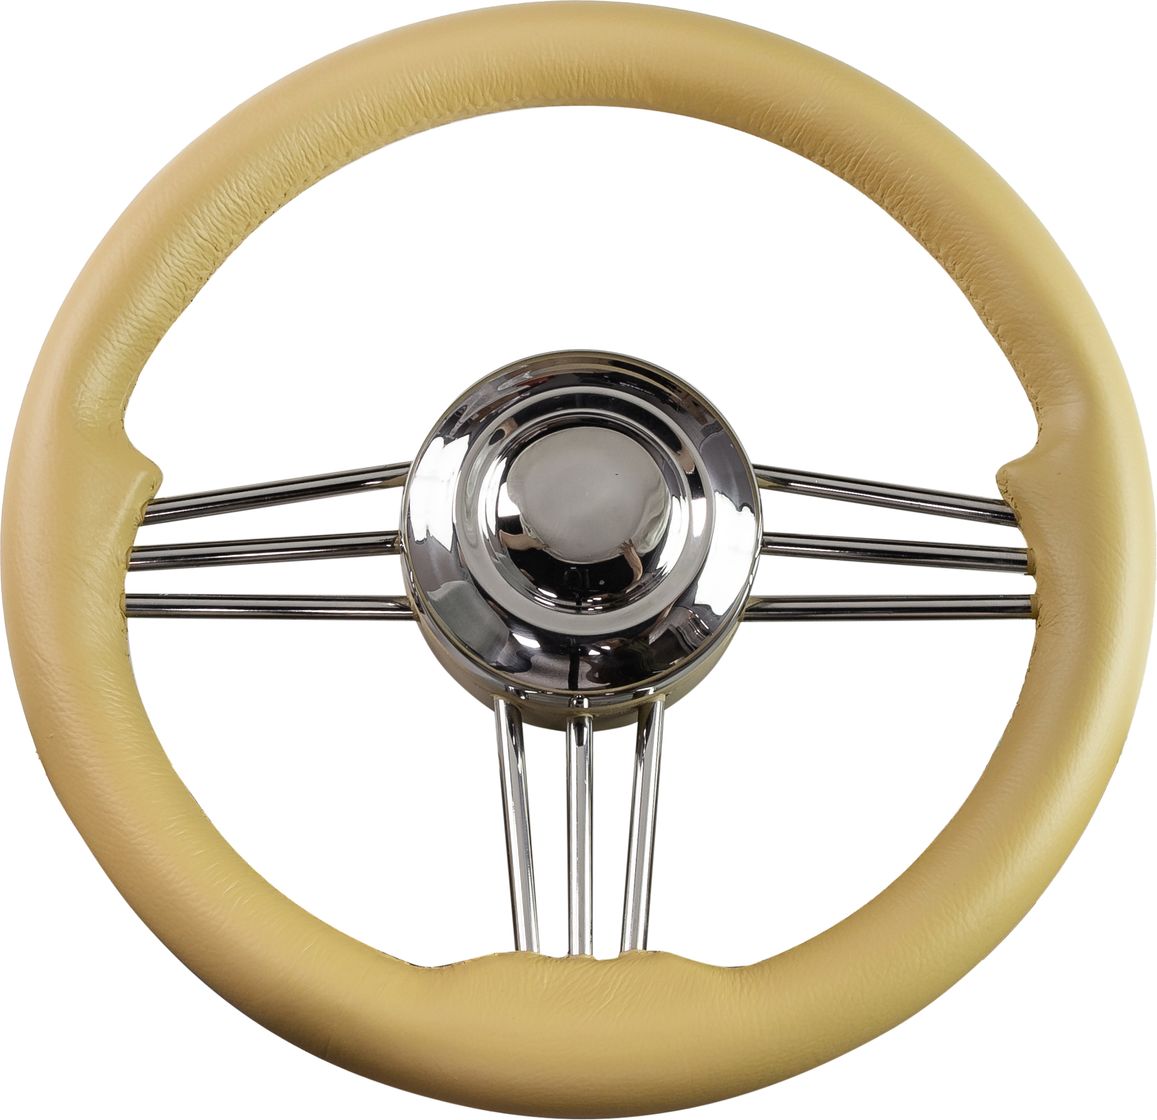 Рулевое колесо Osculati, диаметр 350 мм, цвет кремовый (имитация кожи) 45-173-36 колесо пенополиуретановое d 360 мм ступица диаметр 13 мм длина 90 мм